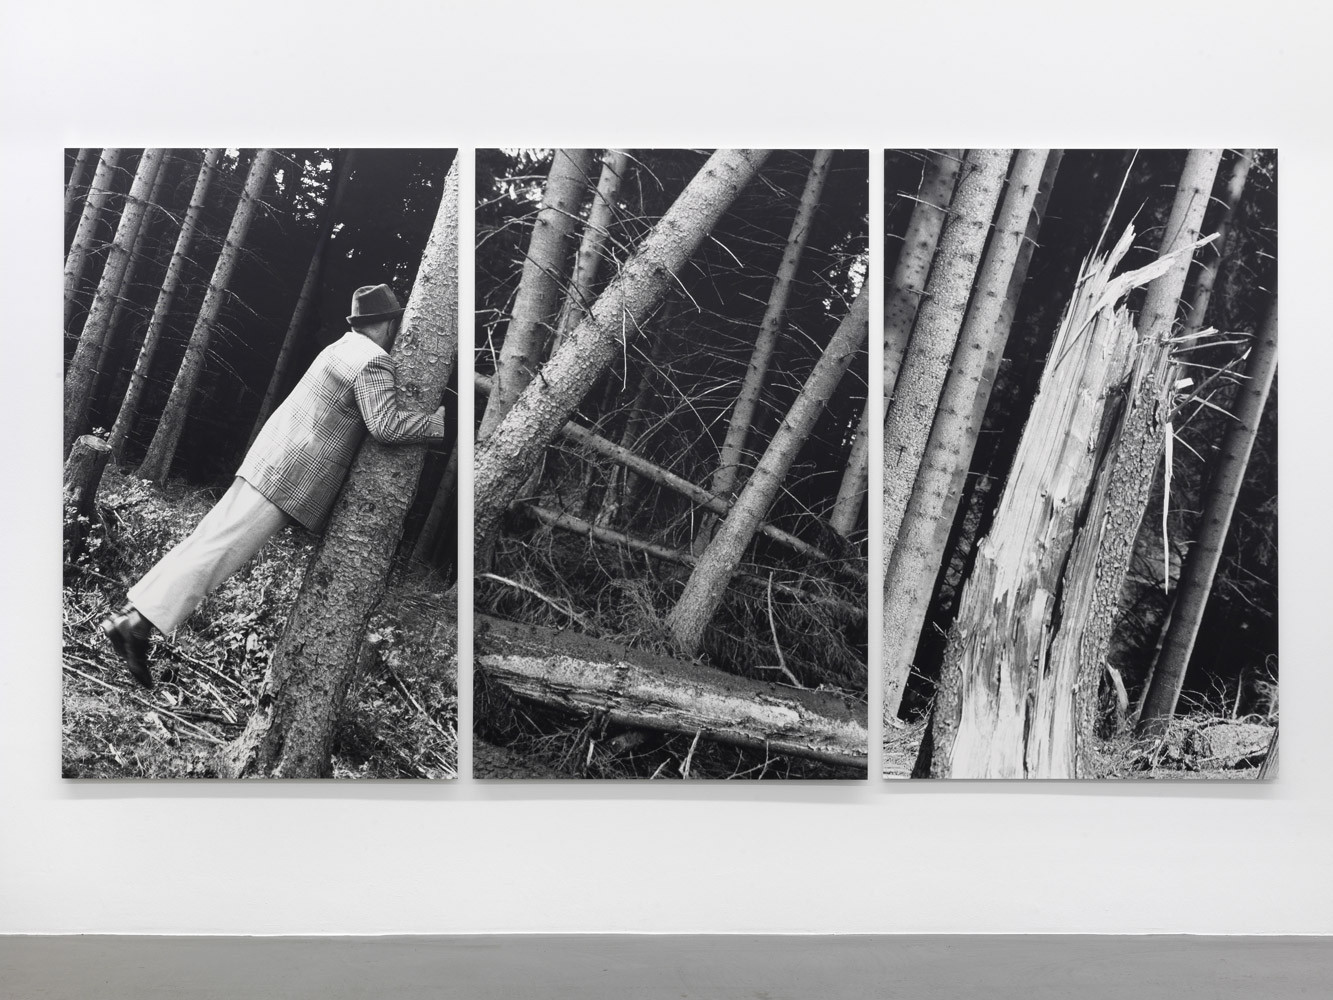 Anna & Bernhard Blume, ‘Kontakt mit Bäumen’, 1987, Photograph